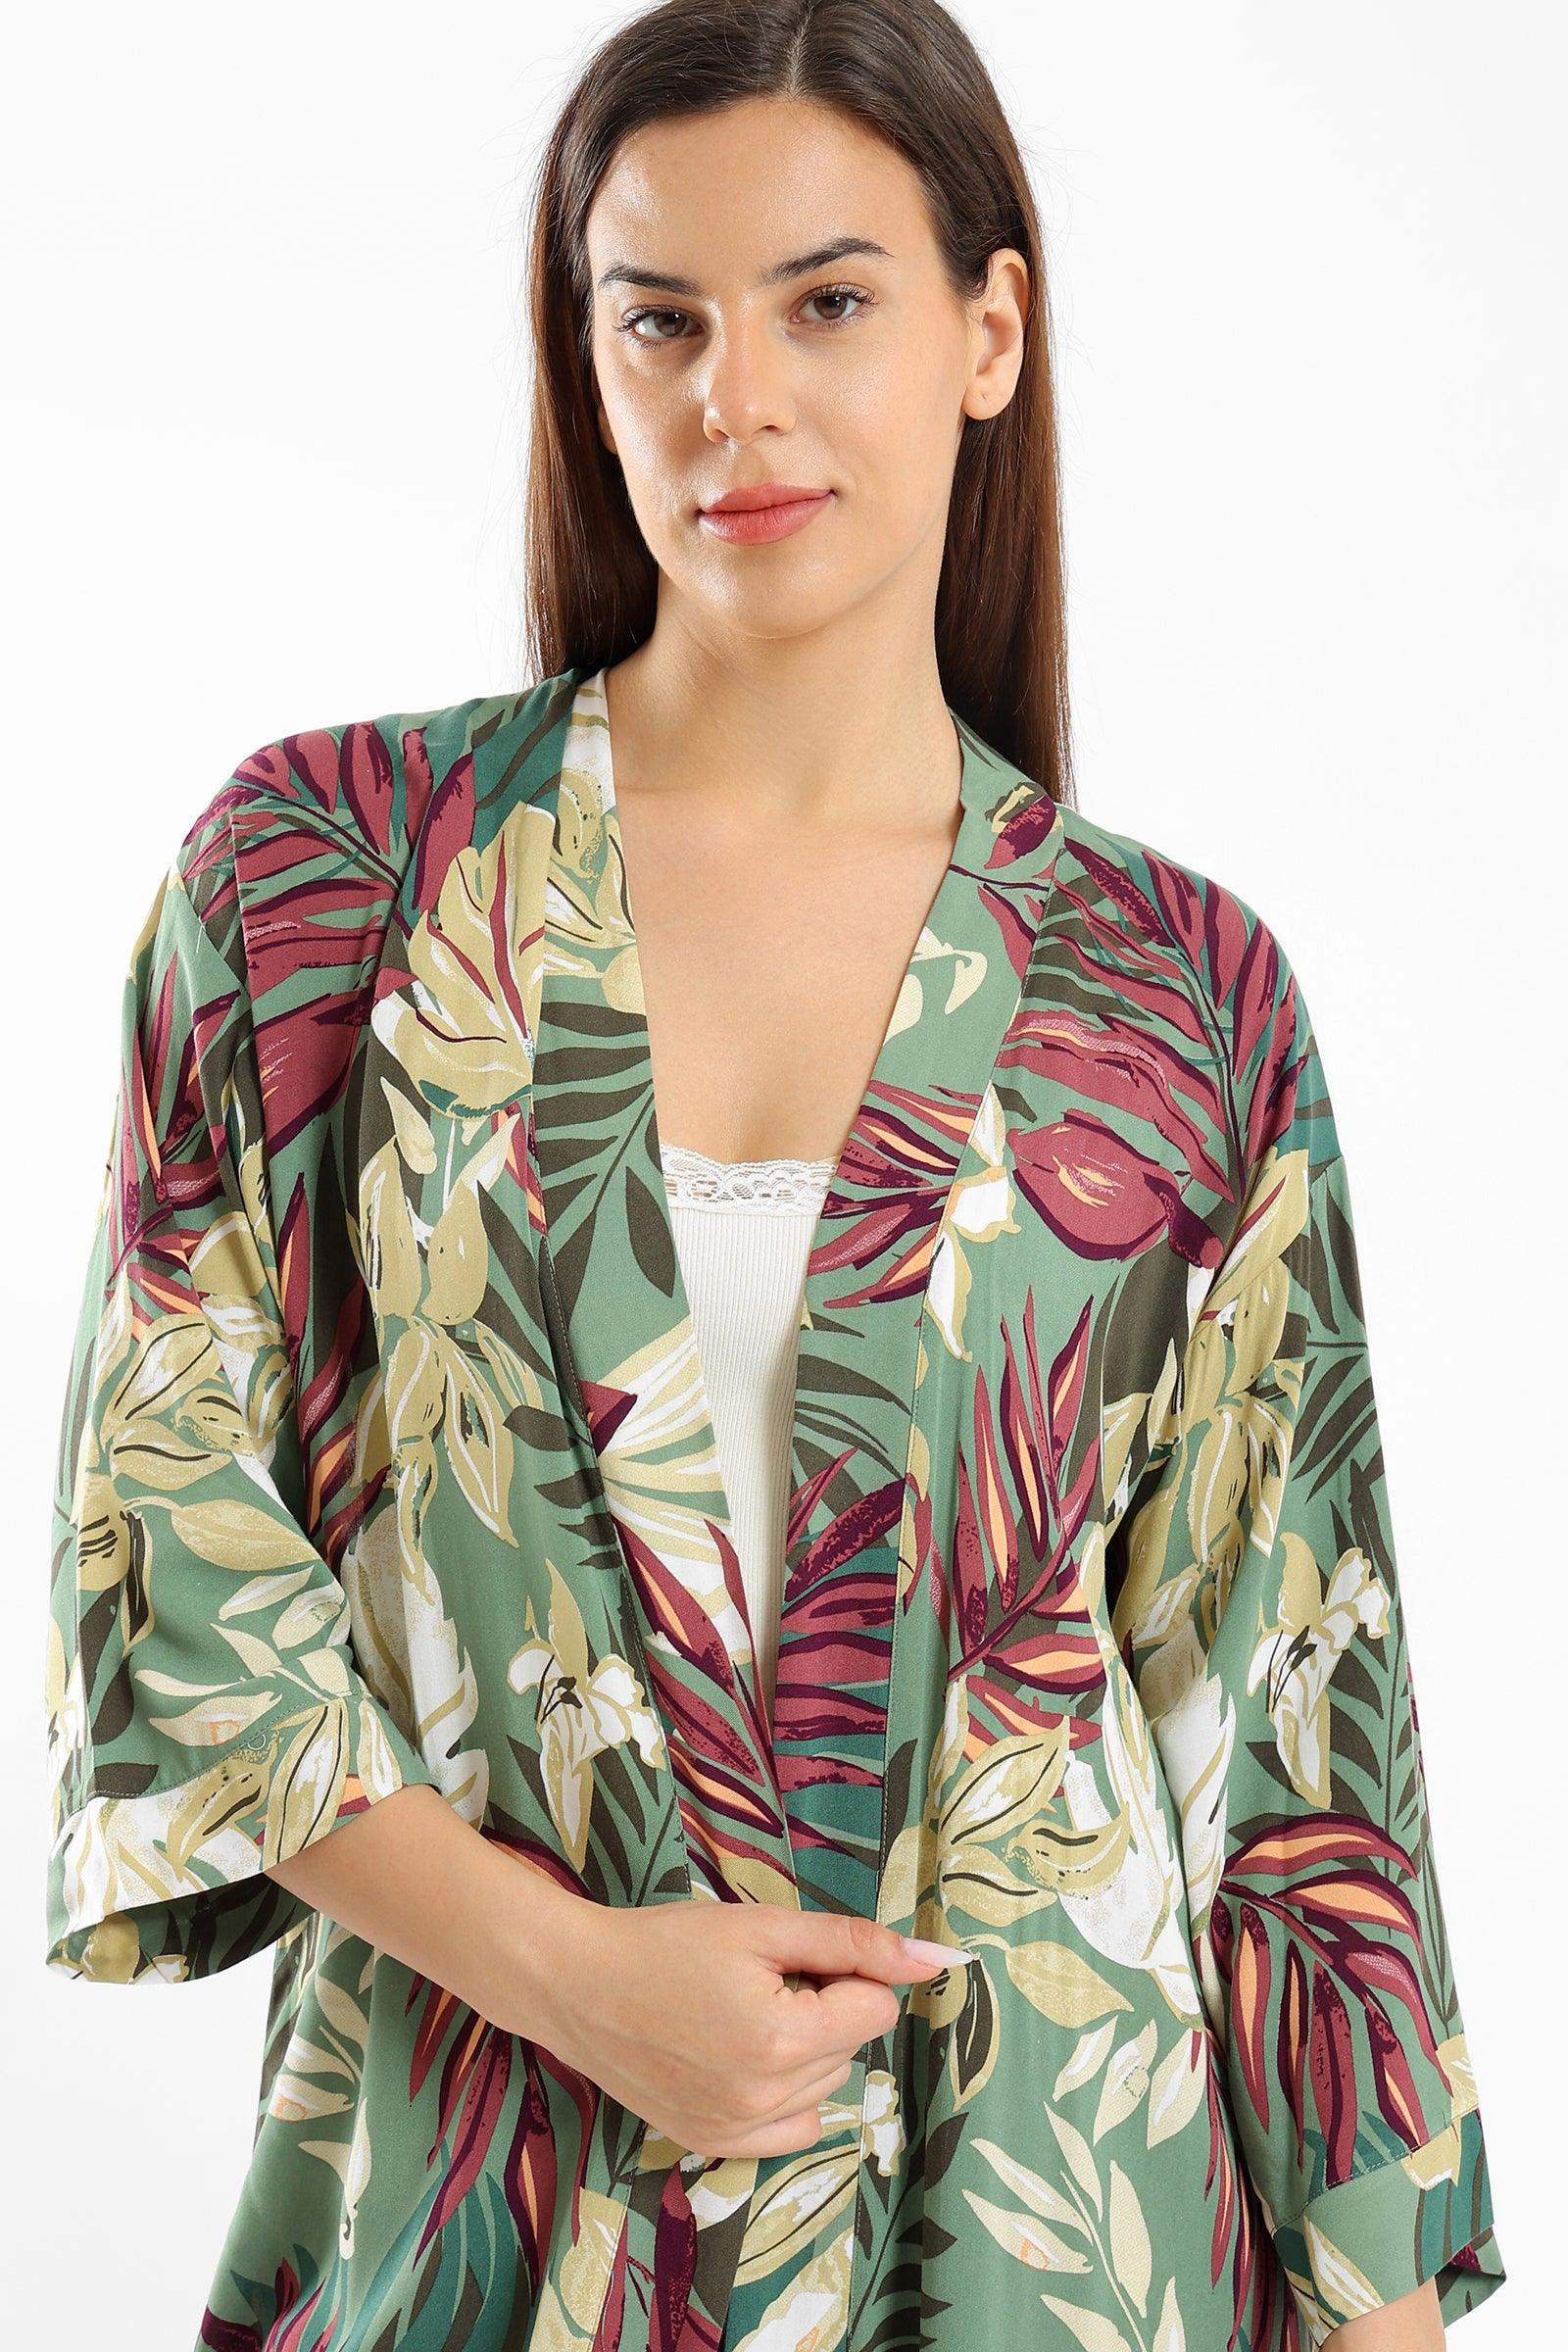 Tropical Print Pyjama Kimono - Carina - كارينا